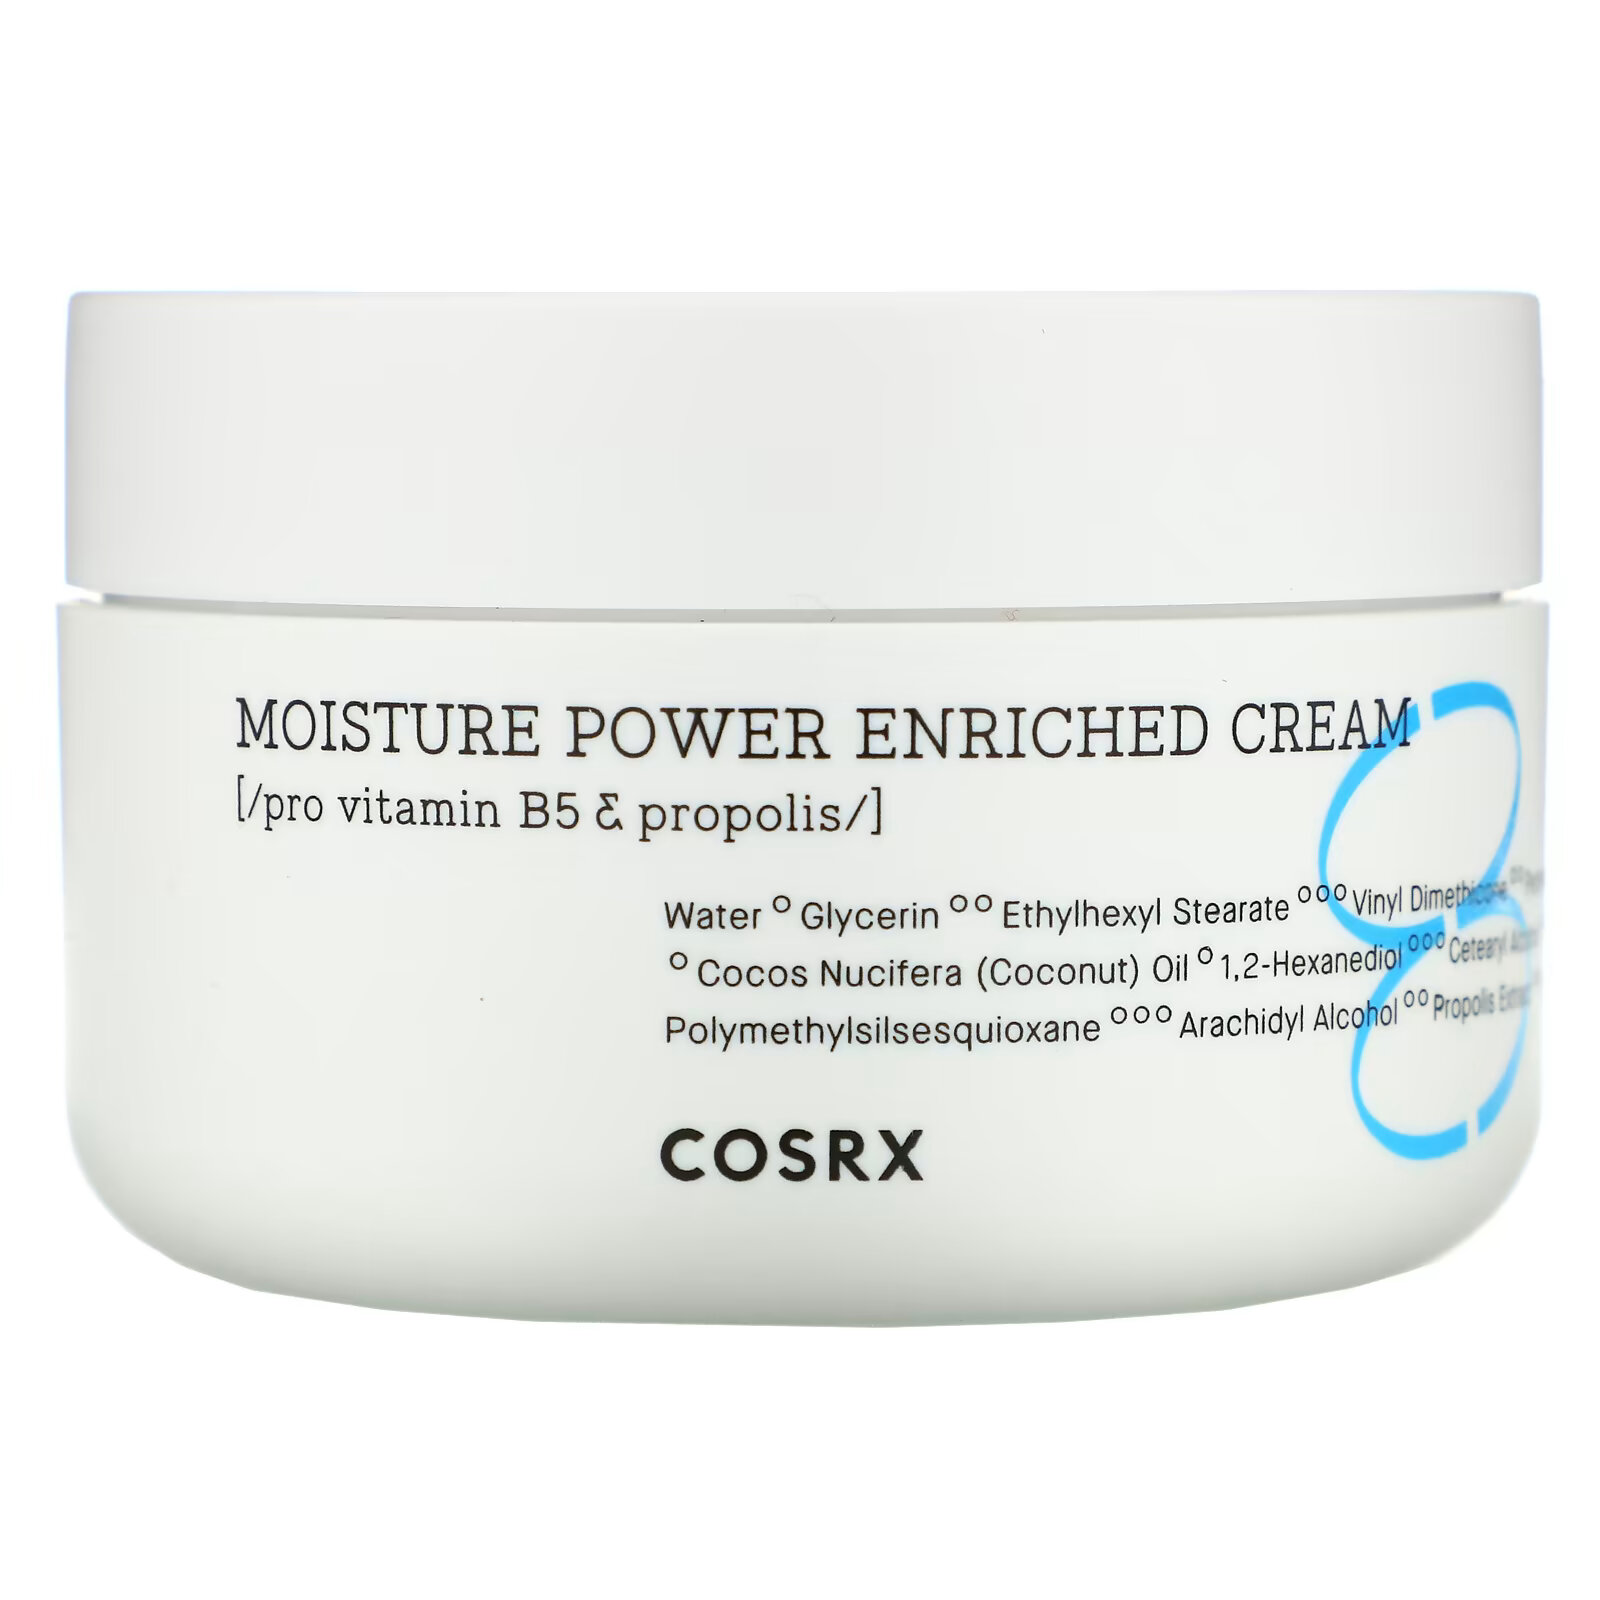 cosrx moisture power enriched cream крем для глубокого увлажнения кожи 50 мл Cosrx, Hydrium, Moisture Power Enriched Cream, увлажняющий крем, 50 мл (1,69 жидк. унции)